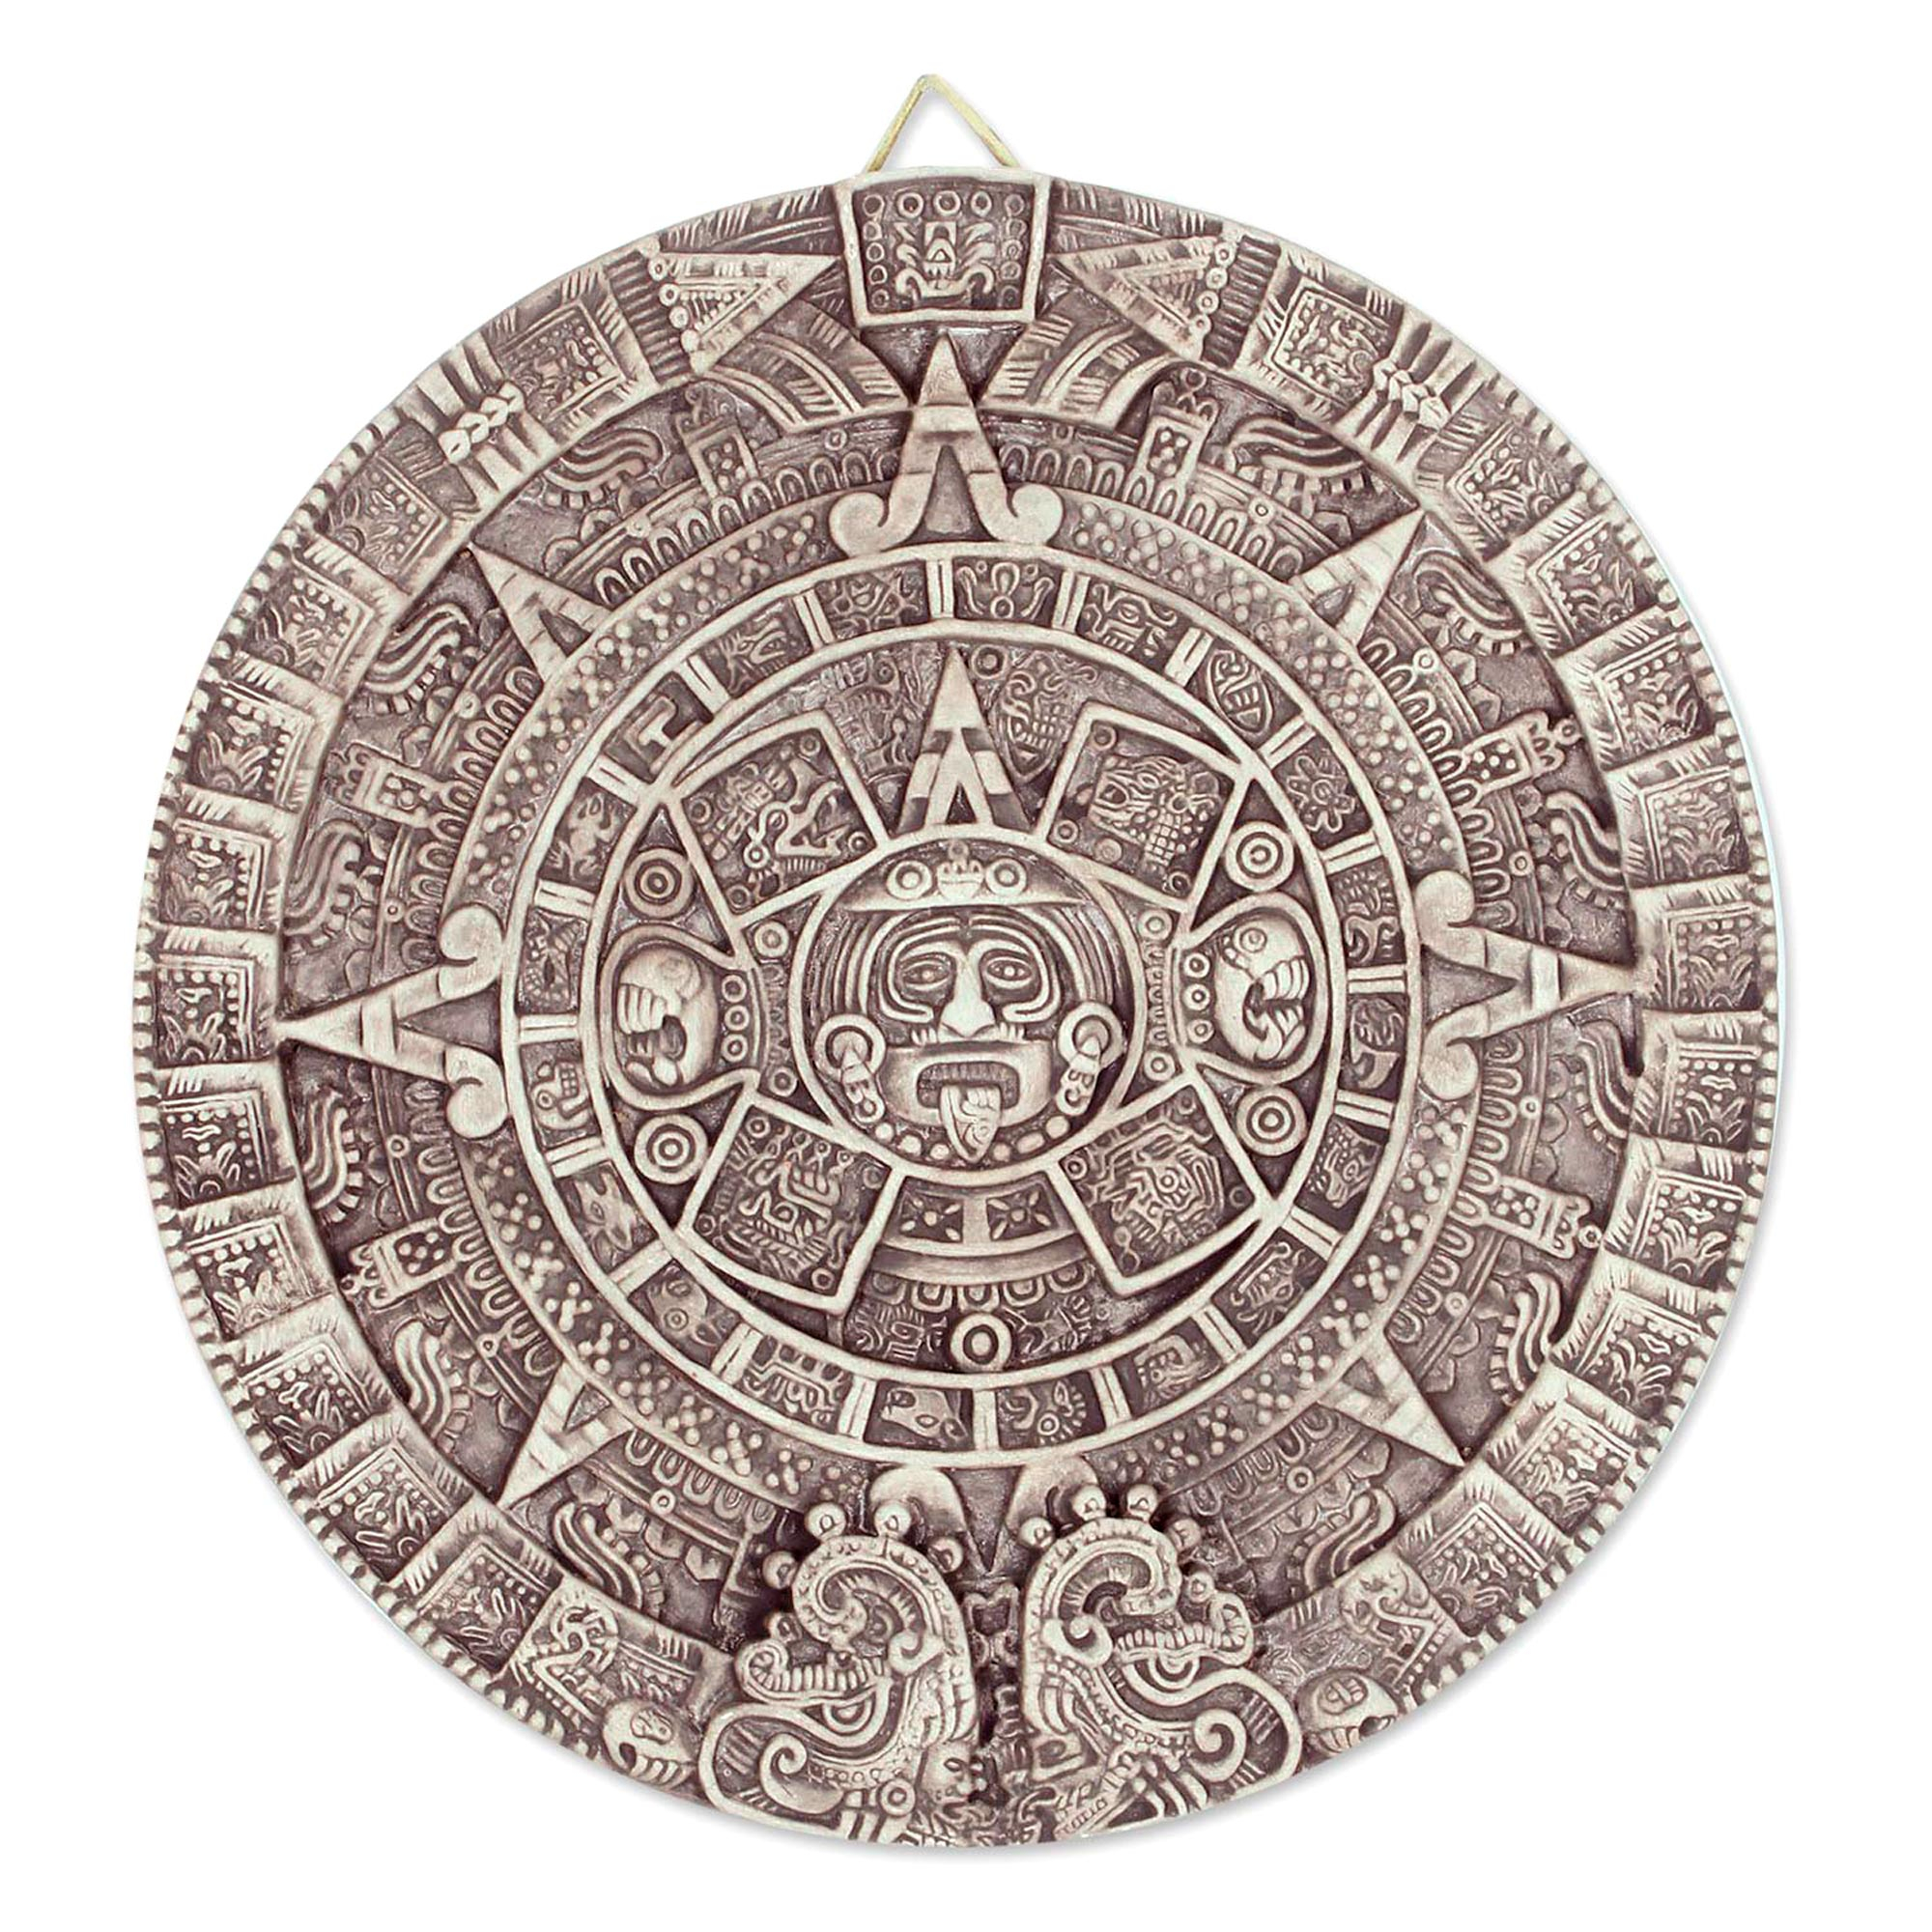 Календарь ма й я слушать. Камень солнца ацтеков. Солнечный камень ацтеков. Камень солнца ацтеков музей Мехико. Солнечный камень древних ацтеков.